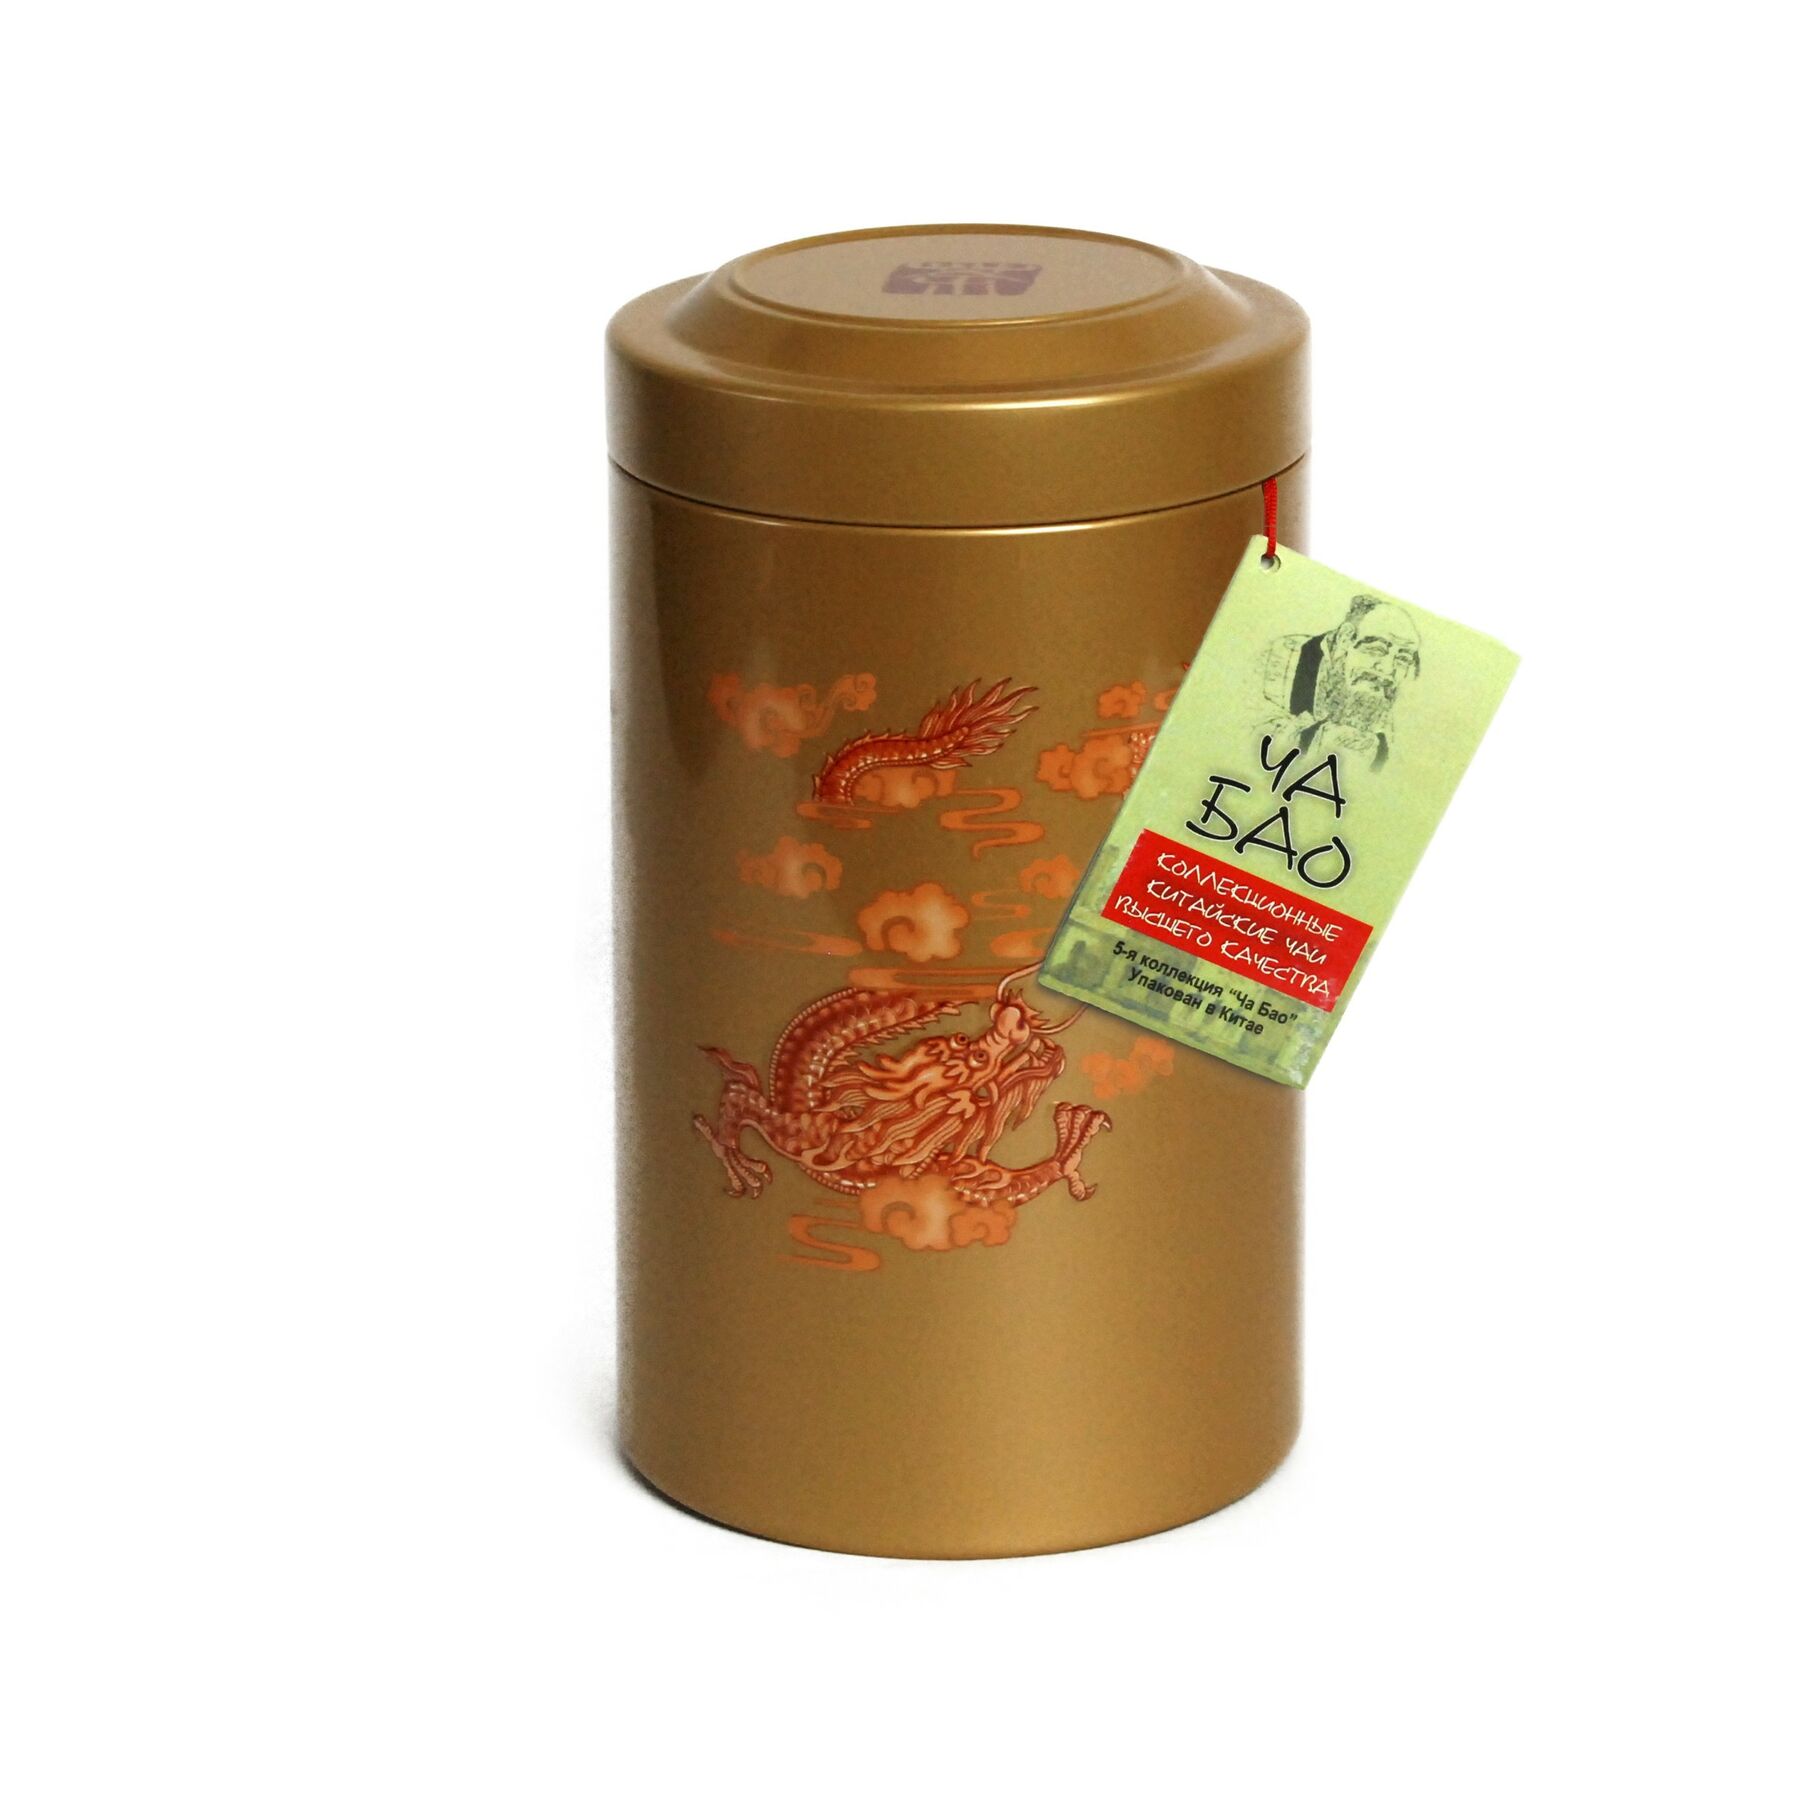 чай "Ча Бао" Бирюзовый - Молочный Улун, 85 гр.